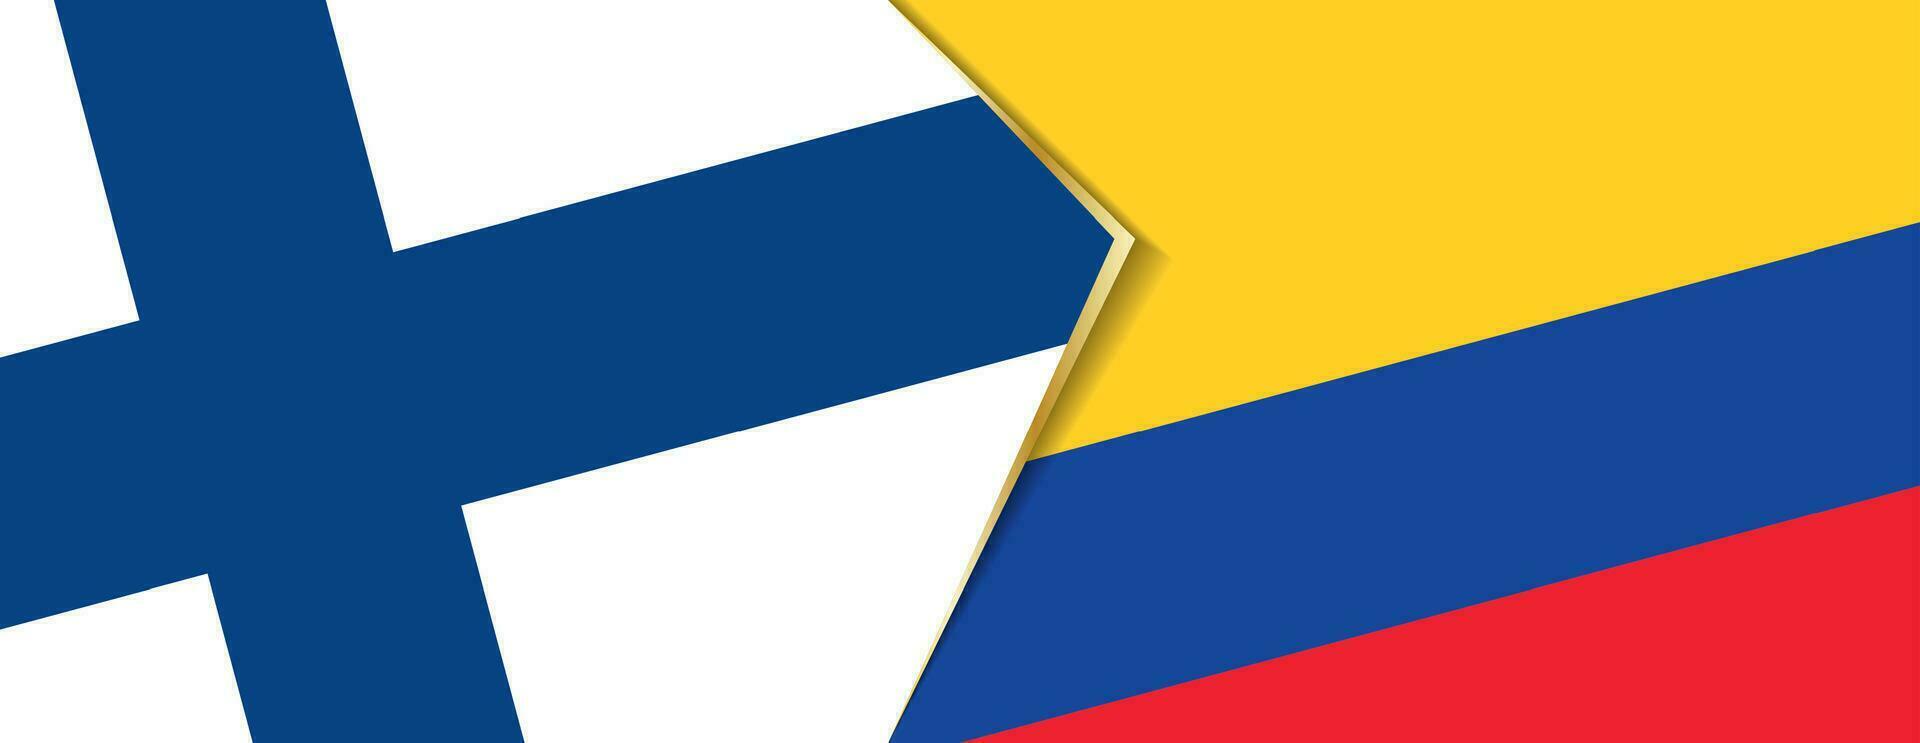 Finlandia y Colombia banderas, dos vector banderas